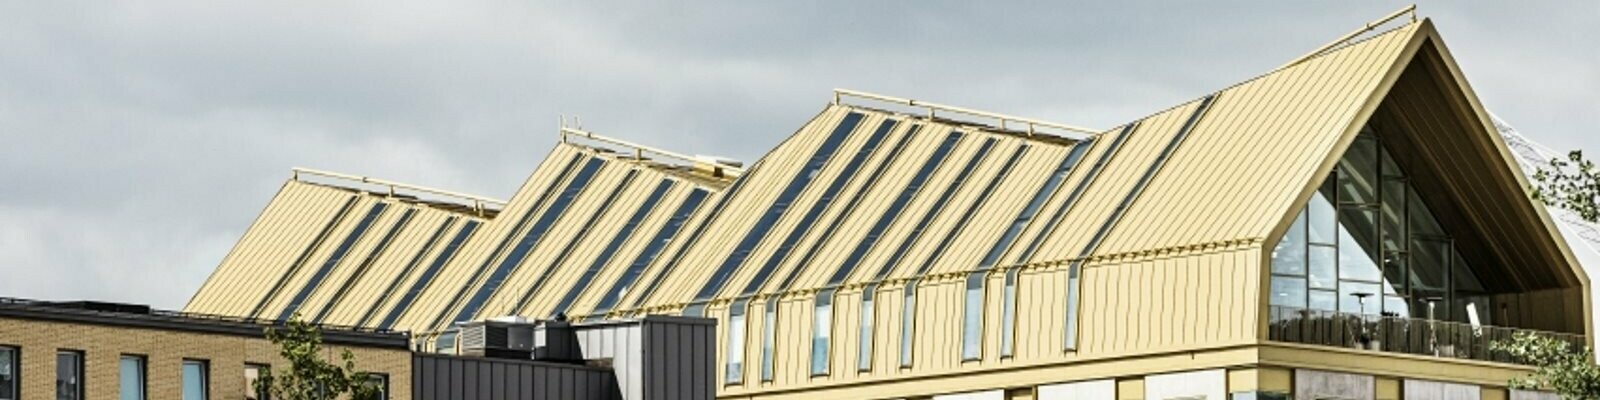 seitliche Frontansicht des Gebäudes in Malmö eingedeckt mit dem Dachsystem PREFALZ in der Sonderfarbe Jaisalmer Gold